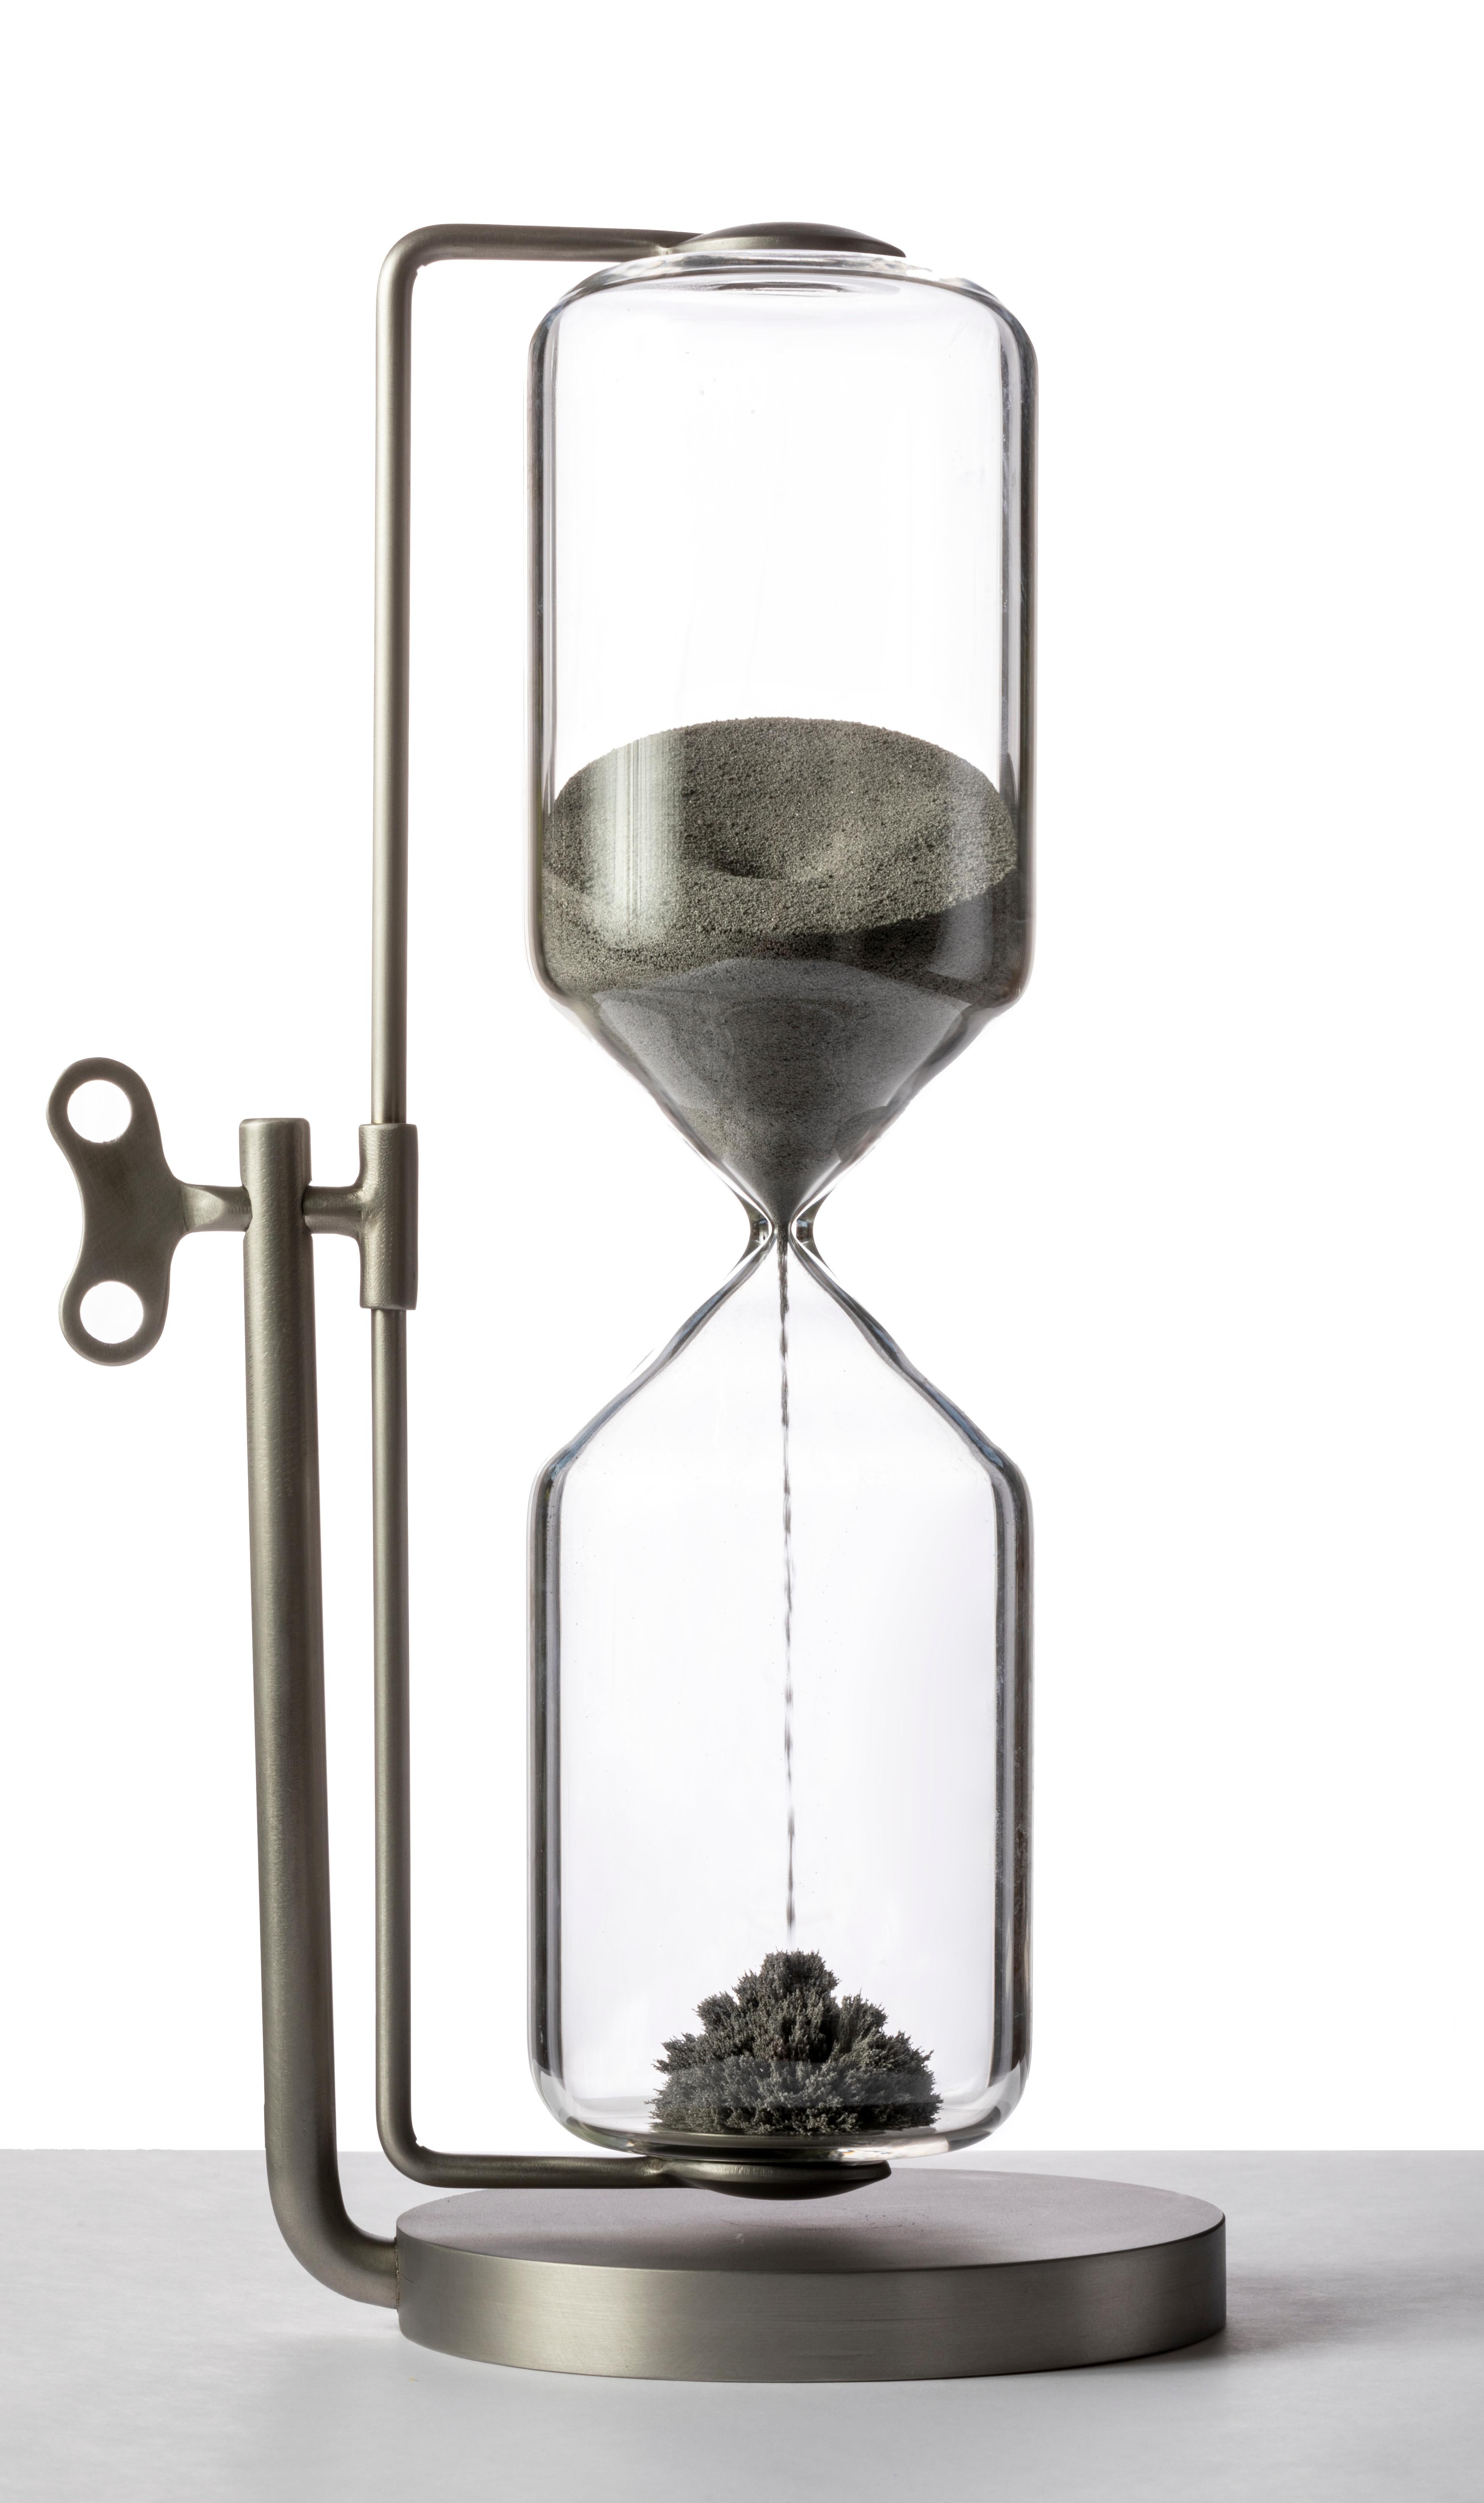 Timeless Hourglass von Secondome Edizioni
Limitierte Auflage von 30 Exemplaren.
Designer: CTRLZACK.
Abmessungen: T 20 x B 13,5 x H 33 cm.
MATERIALIEN: Mundgeblasenes Glas, Magnet, Eisenpulver und Messing.

Collection'S / Produktion: Secondome.